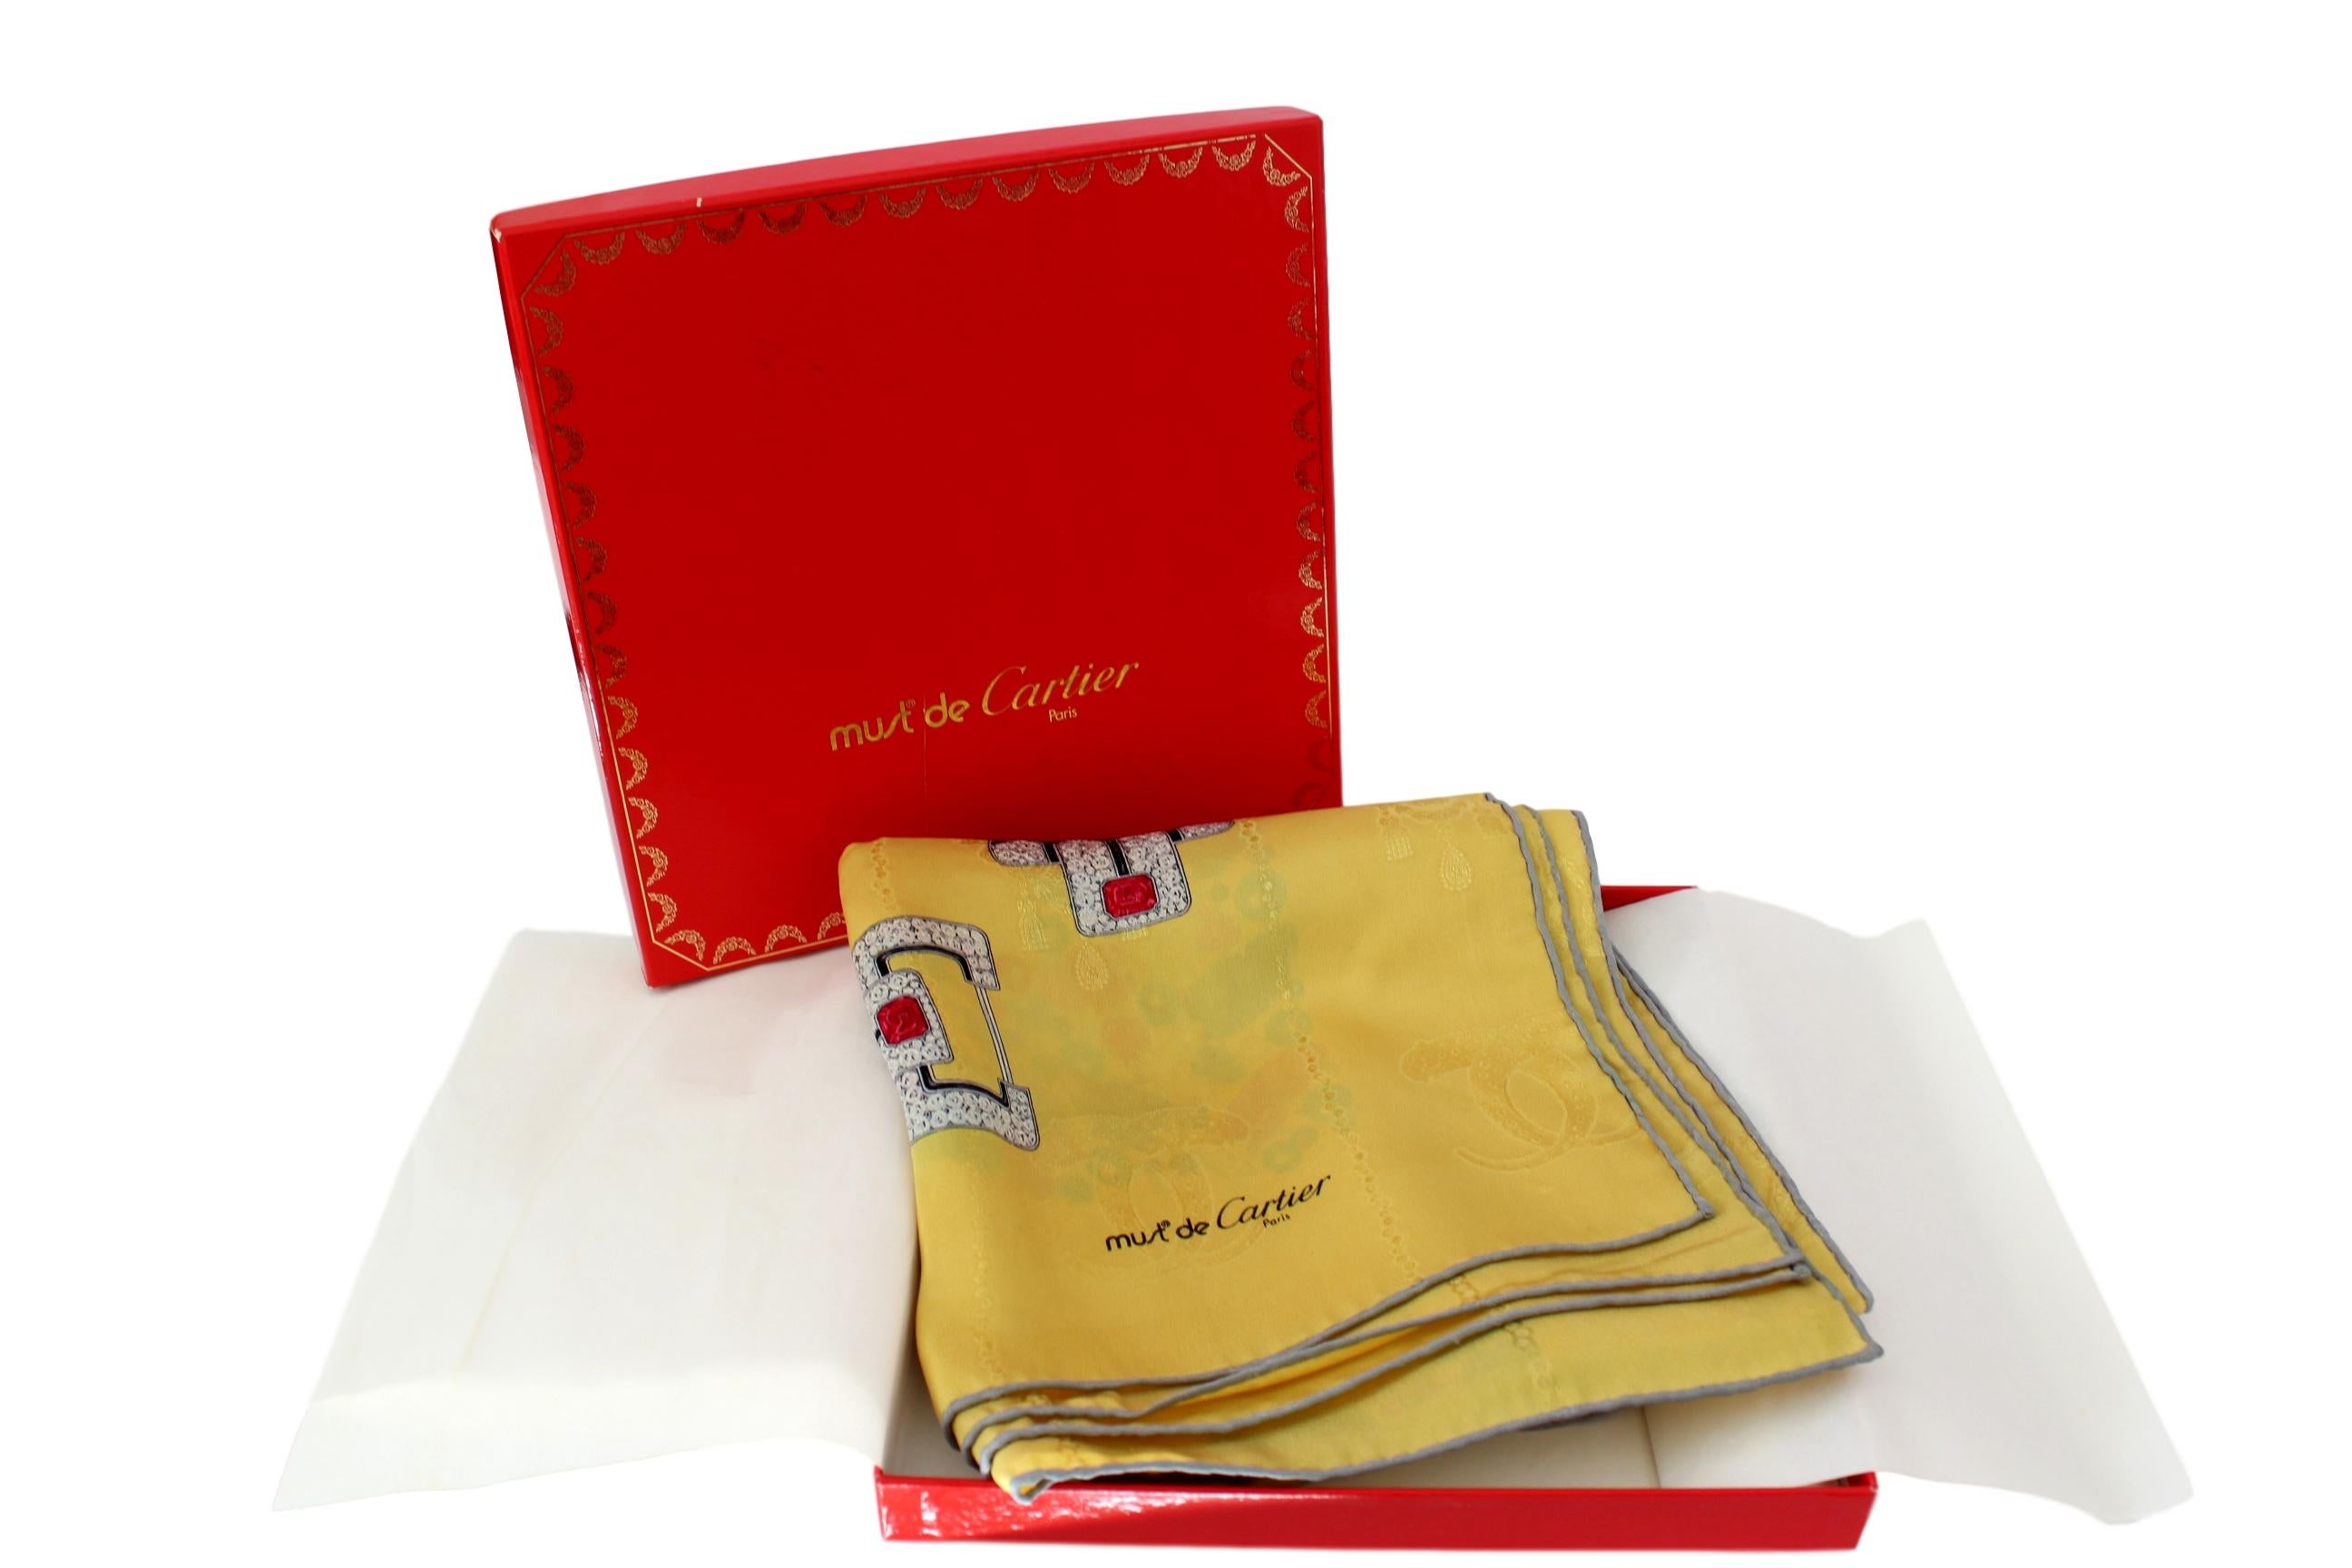 Must de Cartier écharpe vintage des années 1980 en 100% soie, fond jaune avec impression de bijoux multicolores. Fabriqué en France. Excellent état de conservation. Boîte d'origine.

Mesures : 88 x 88 cm